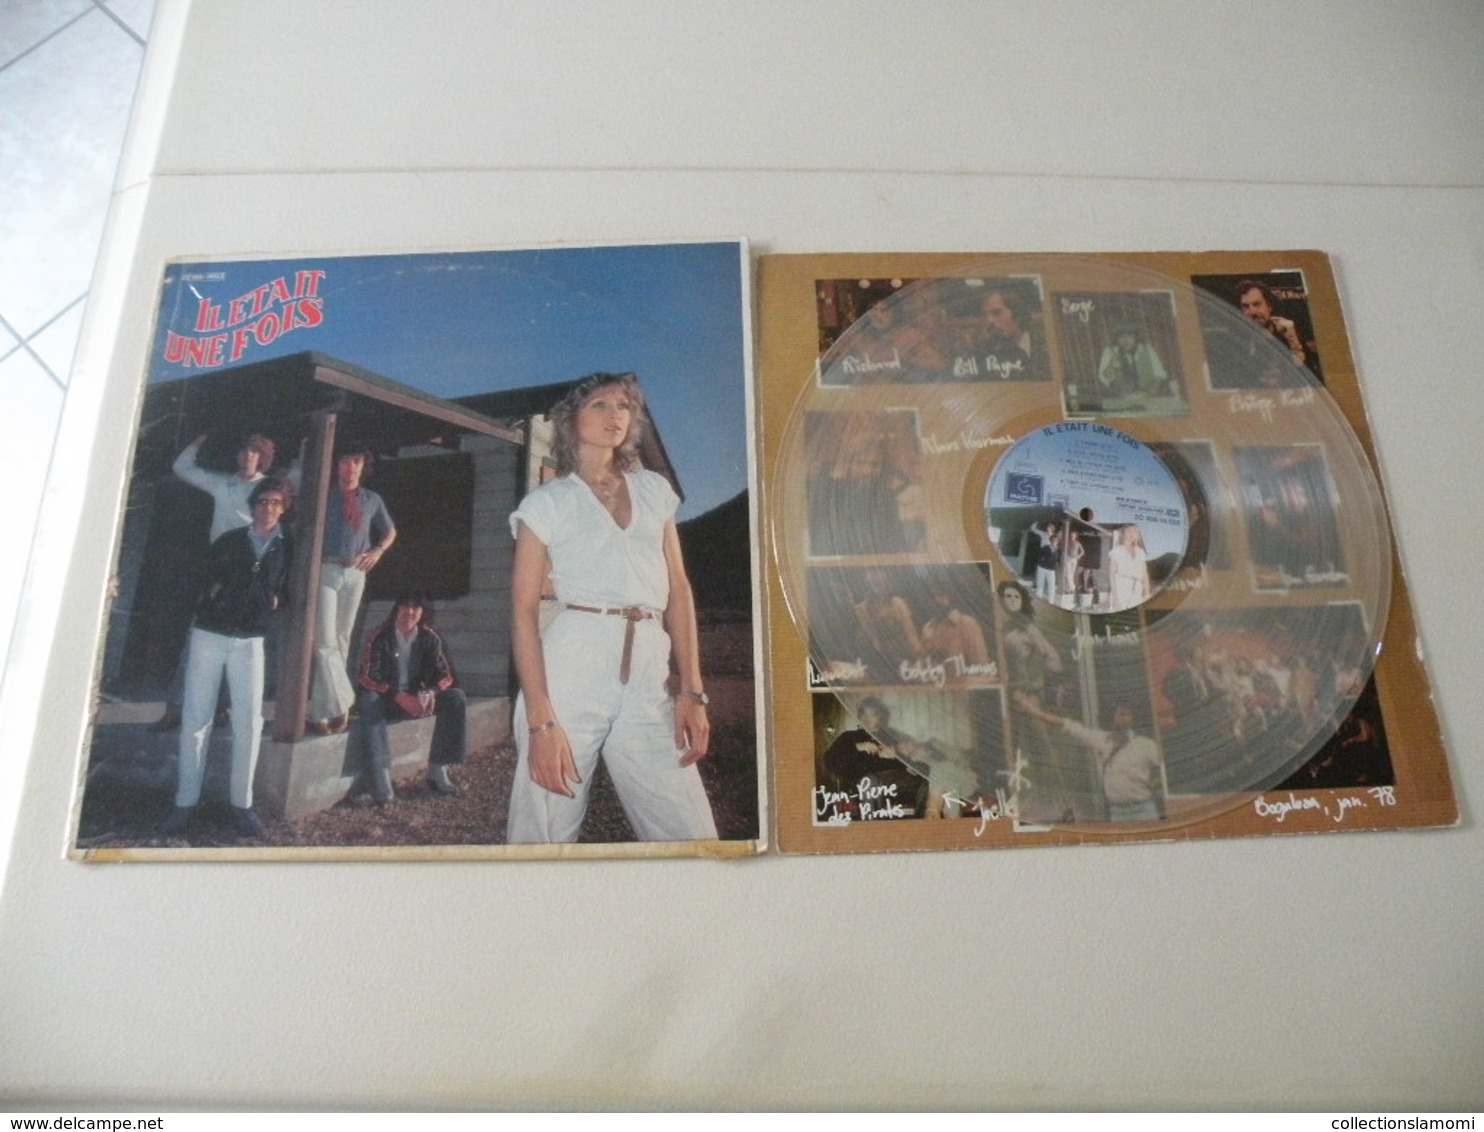 (Le groupe) Il était une fois 1978 - (Titres sur photos) - Vinyle 33 T LP